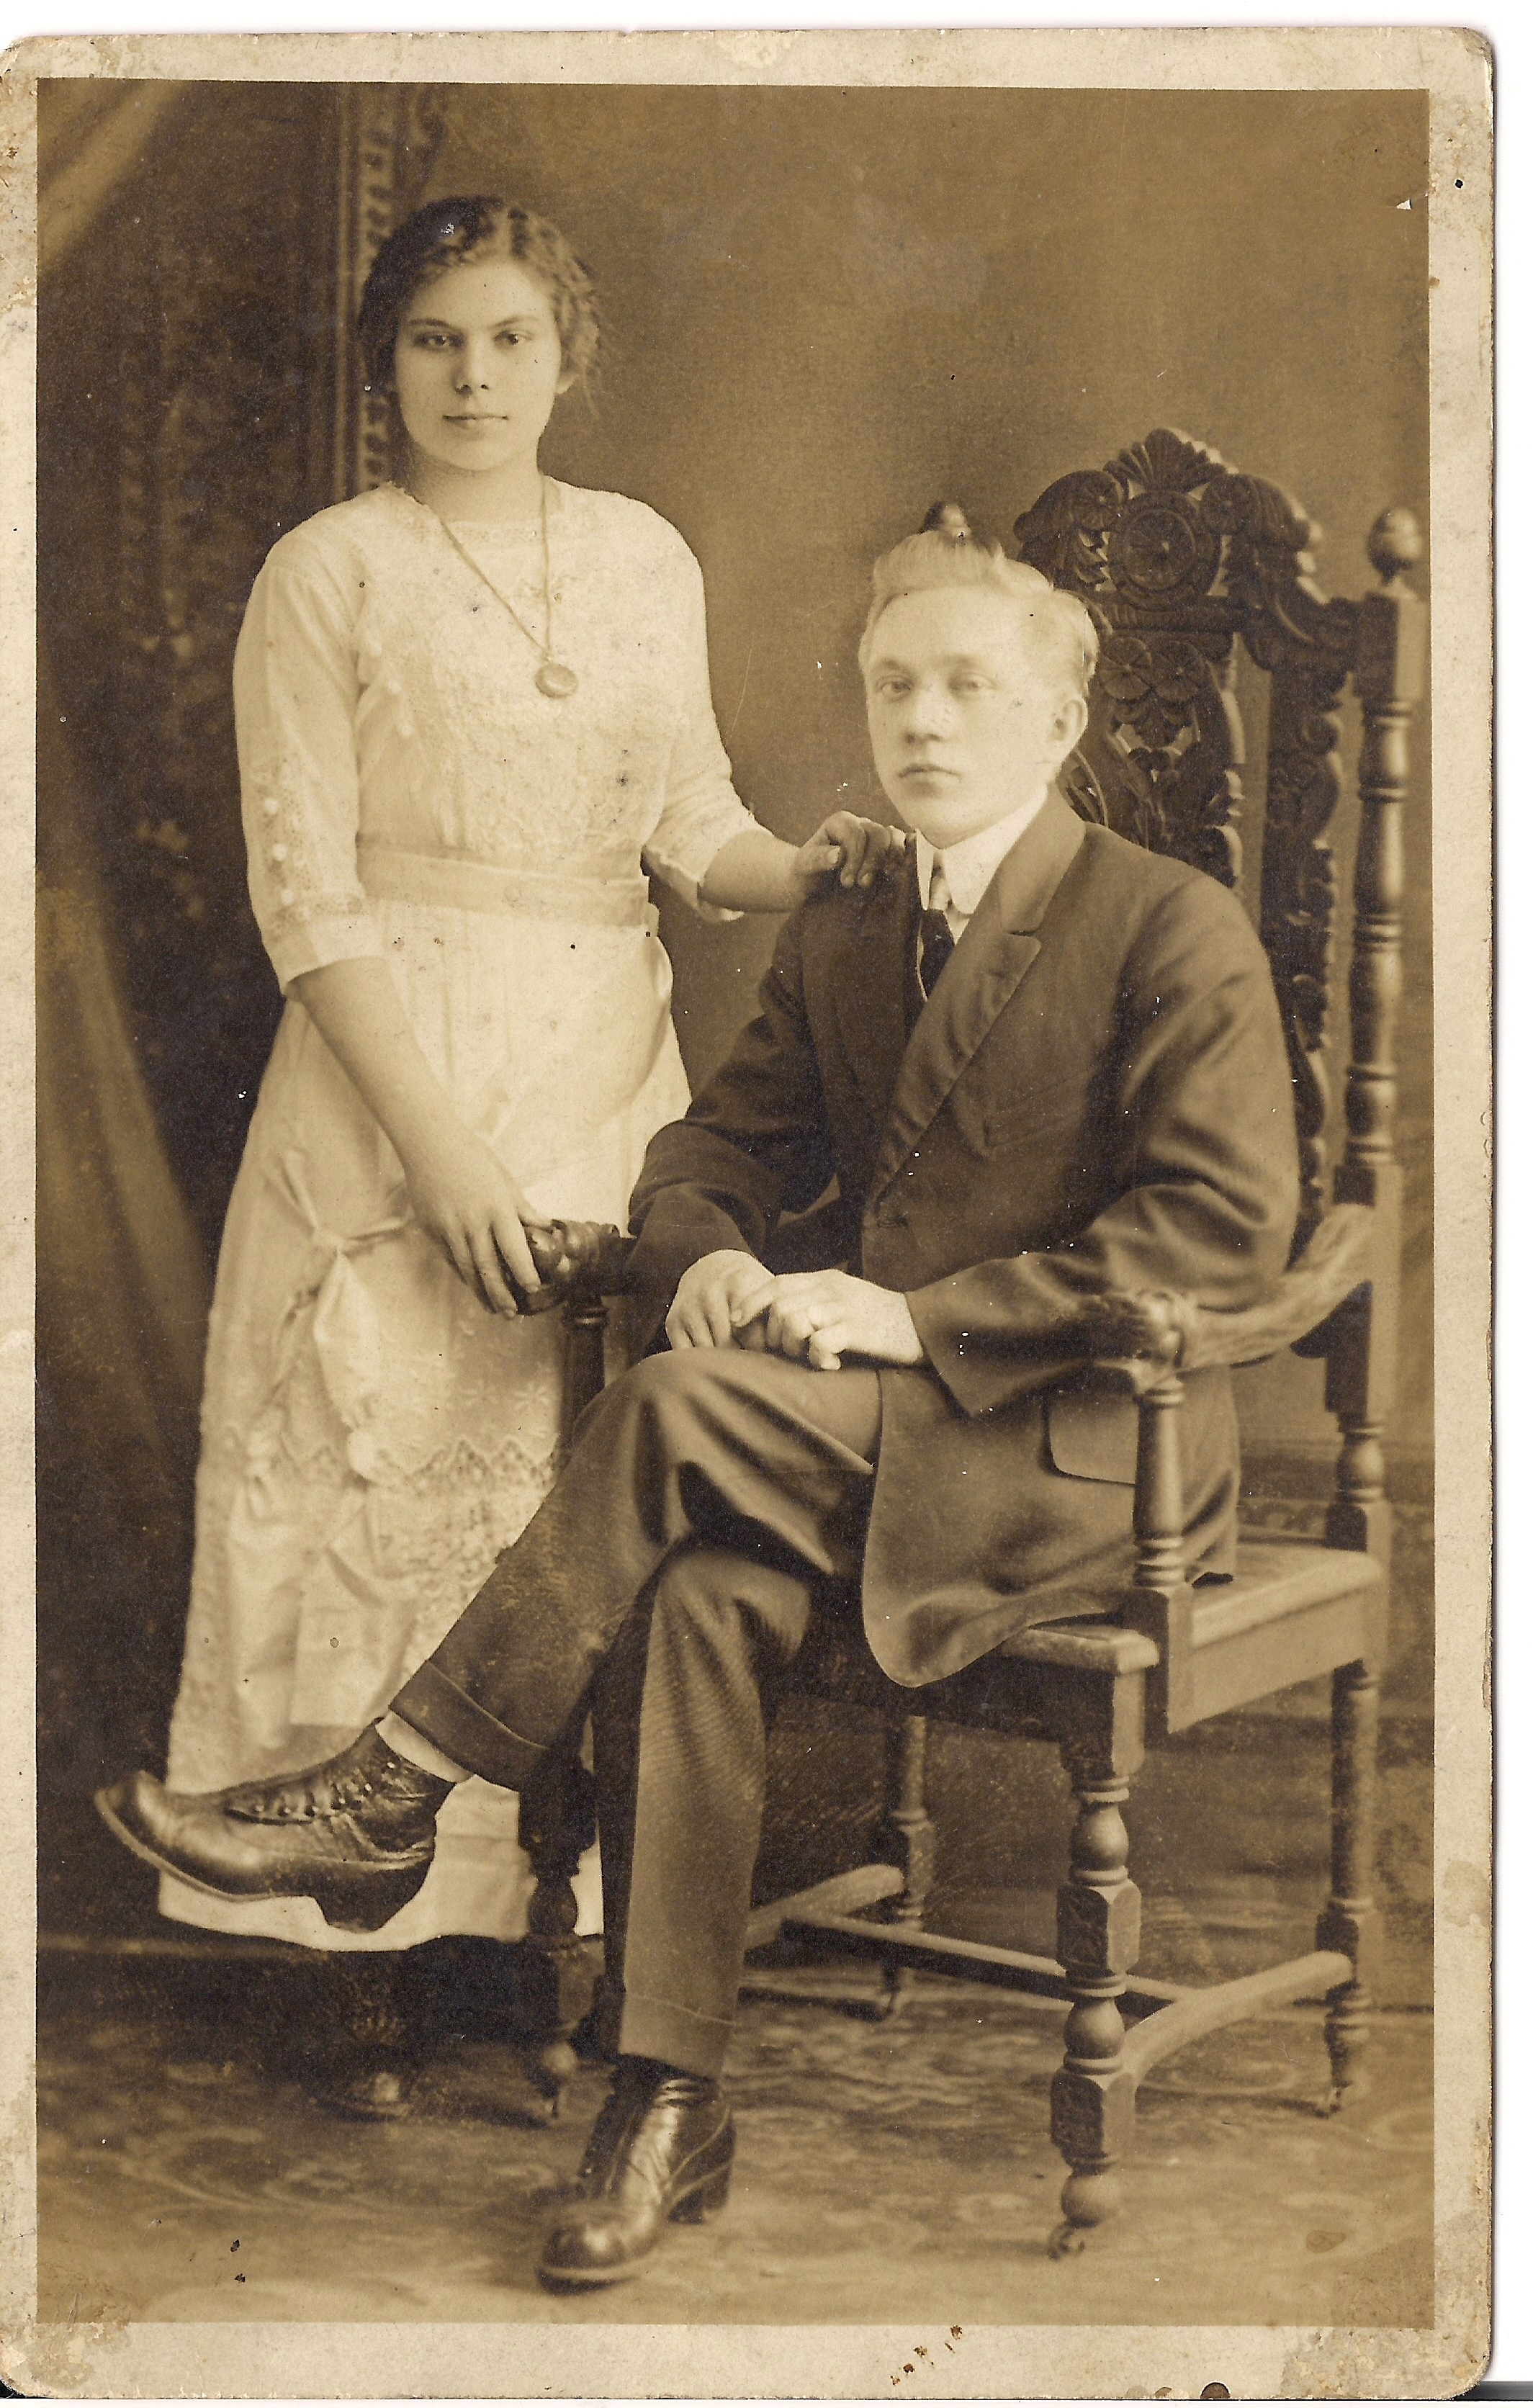 Stephen & Natalie Schindelar, NY 1925